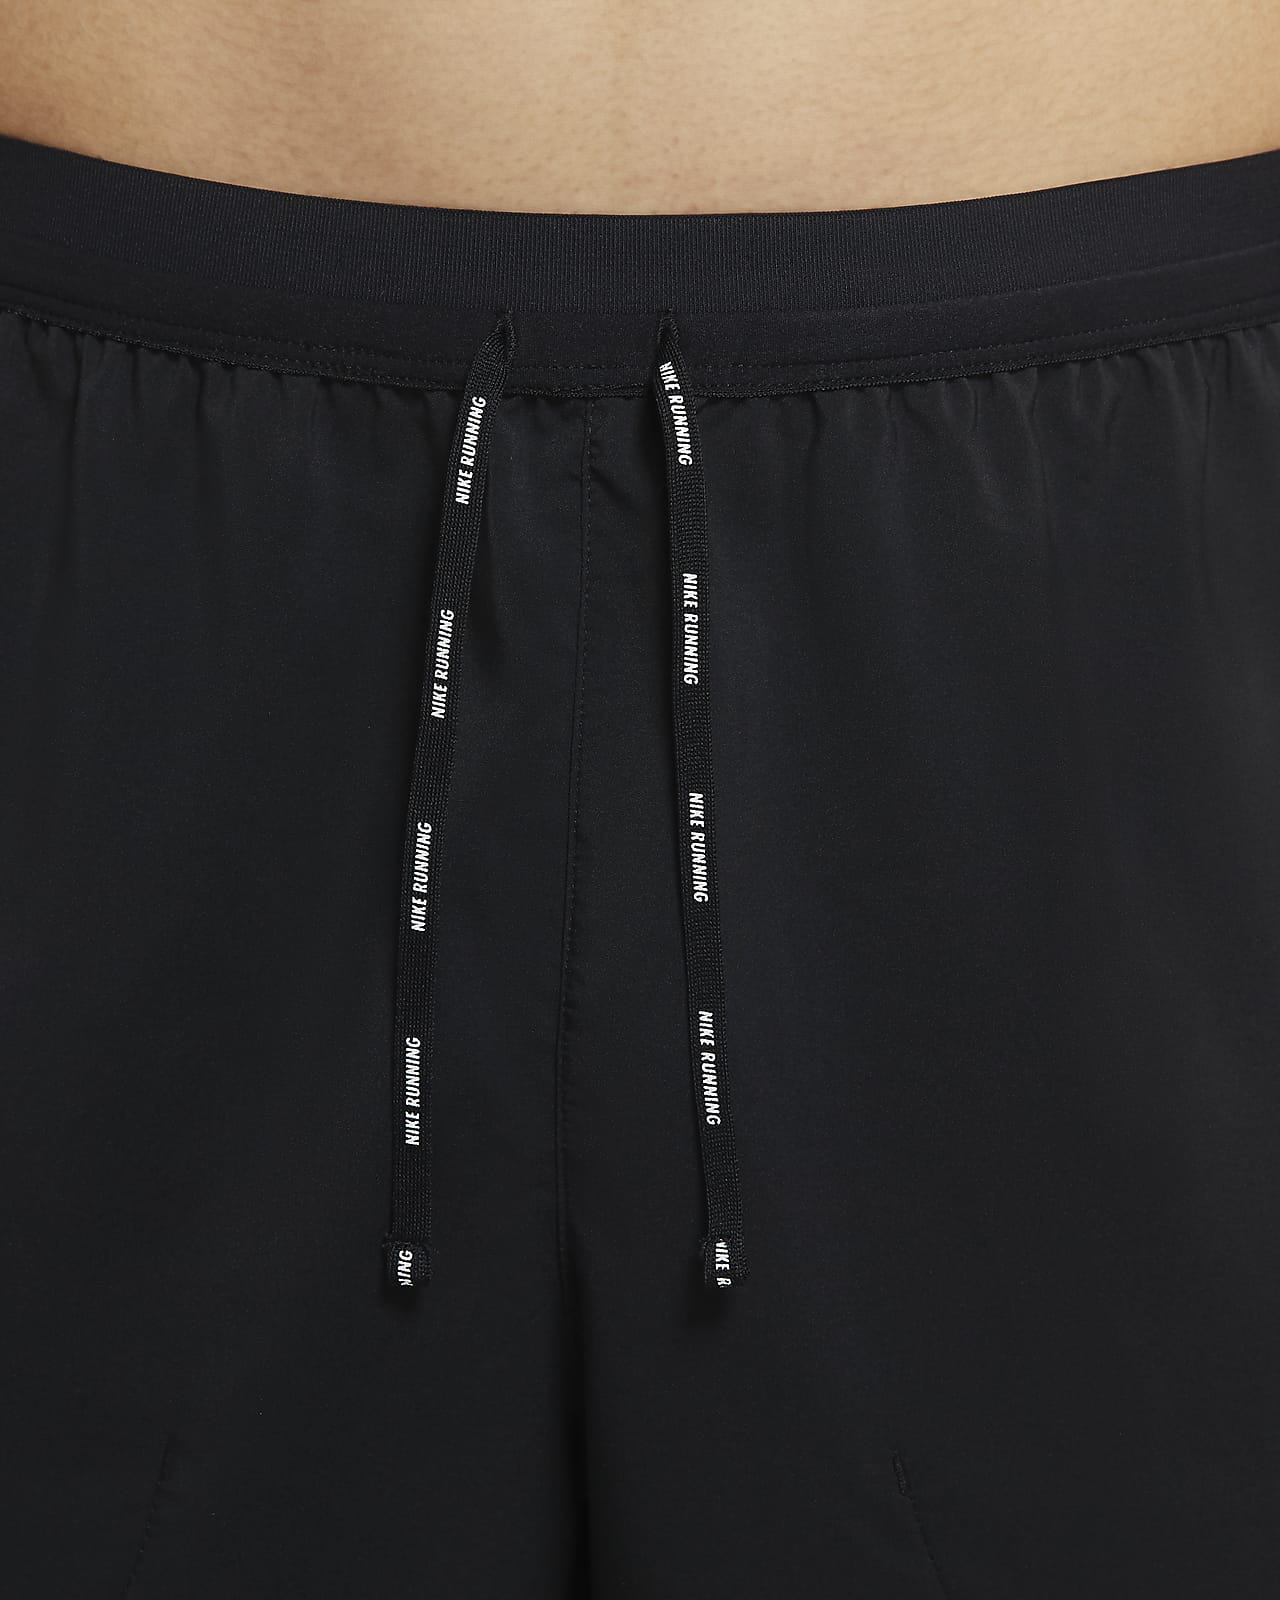 Nike Flex Stride Men's Unlined Running Shorts. Nike SG